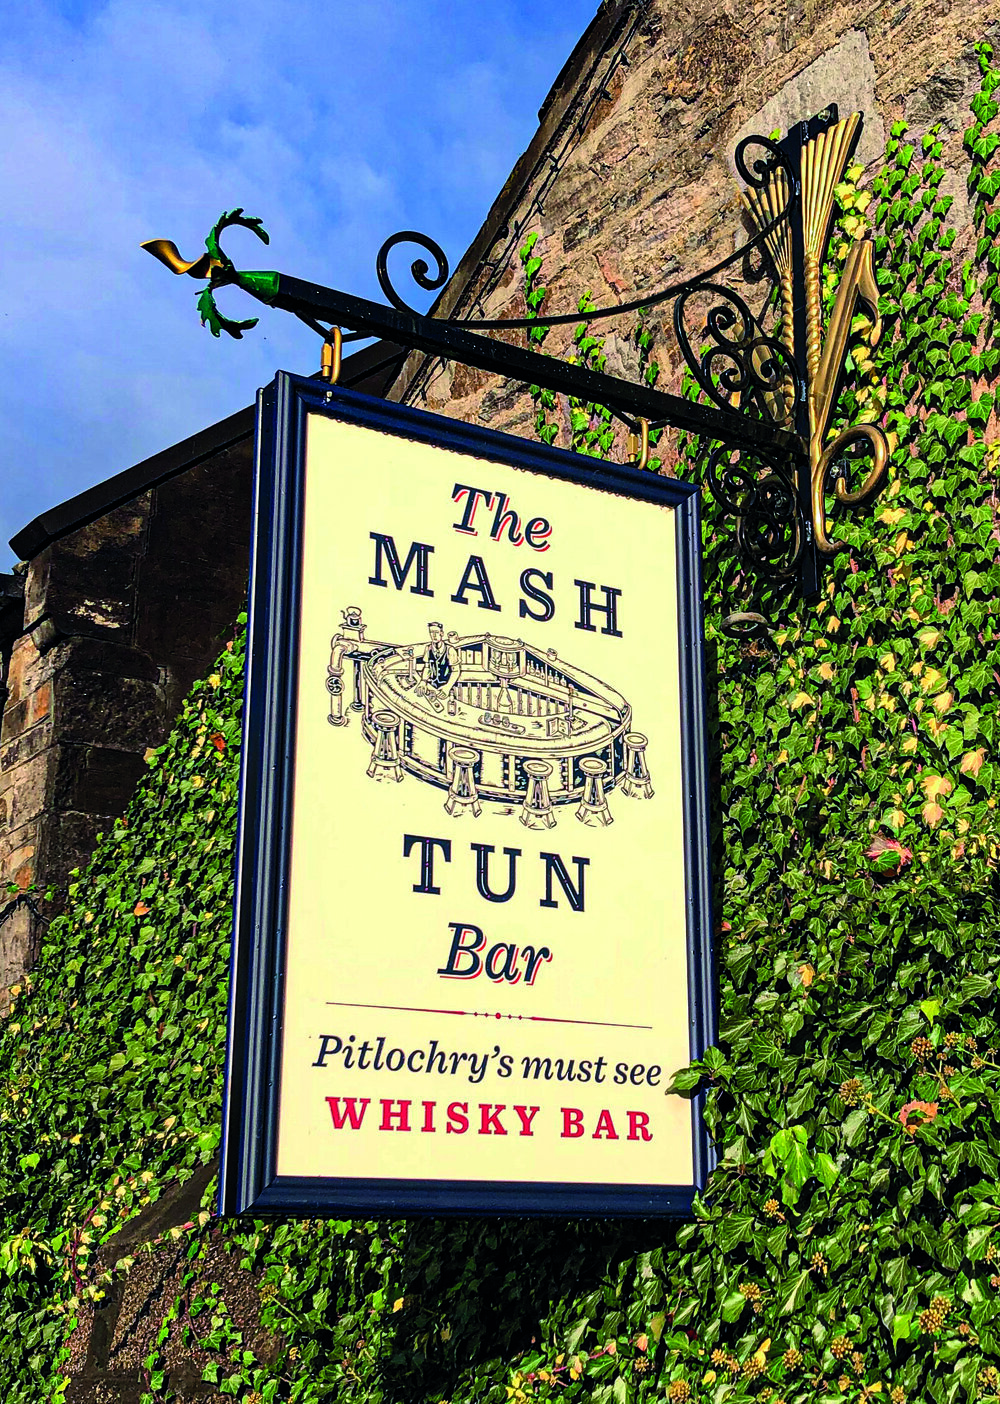 the mash tun bar sign cropped - Jules Akel.jpg